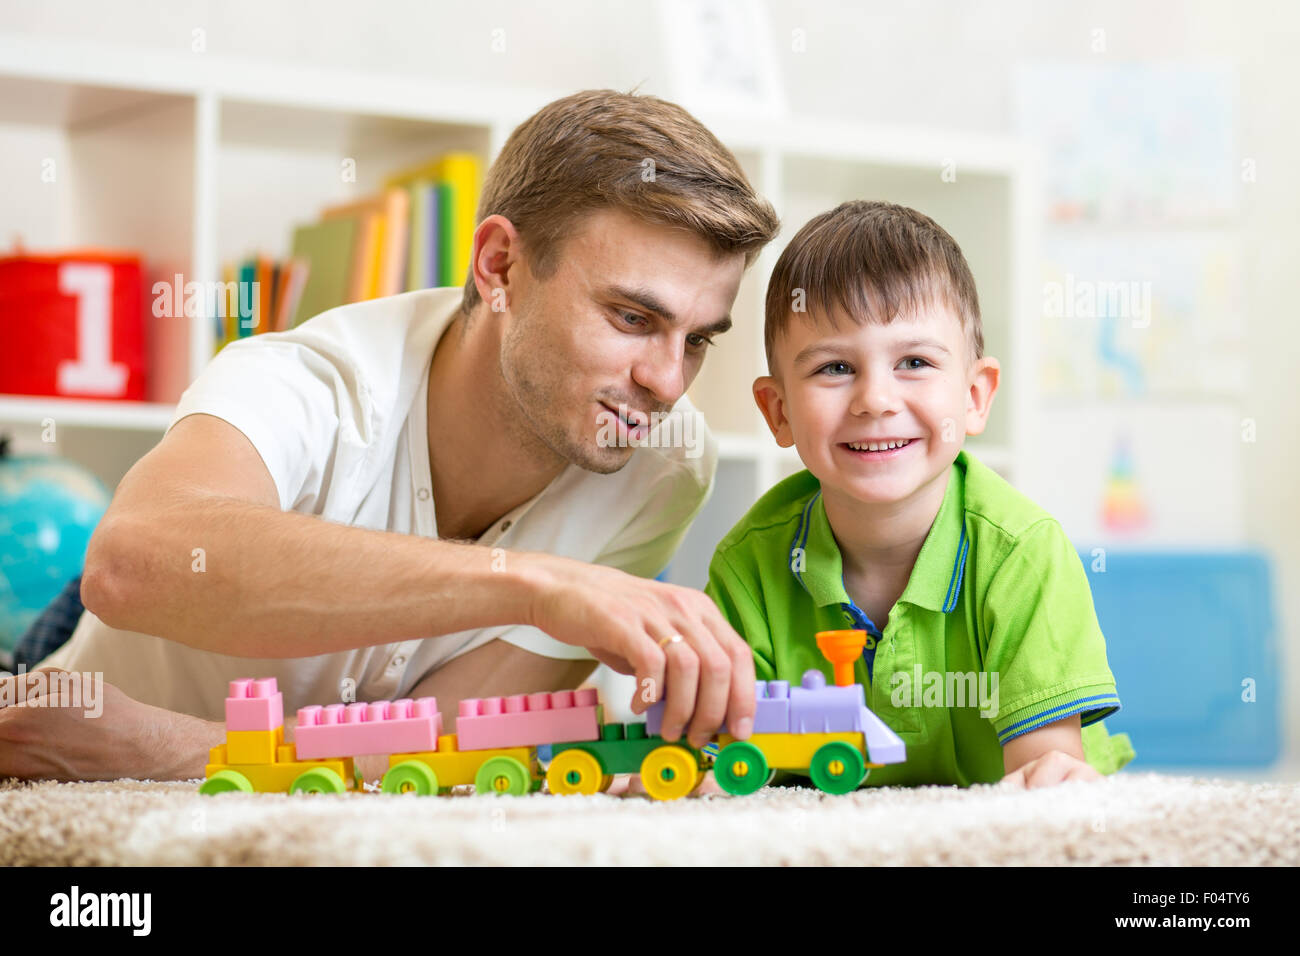 Zeit mit der Familie. Kind junge freudig spielen Bausteine mit seinem Vater Stockfoto